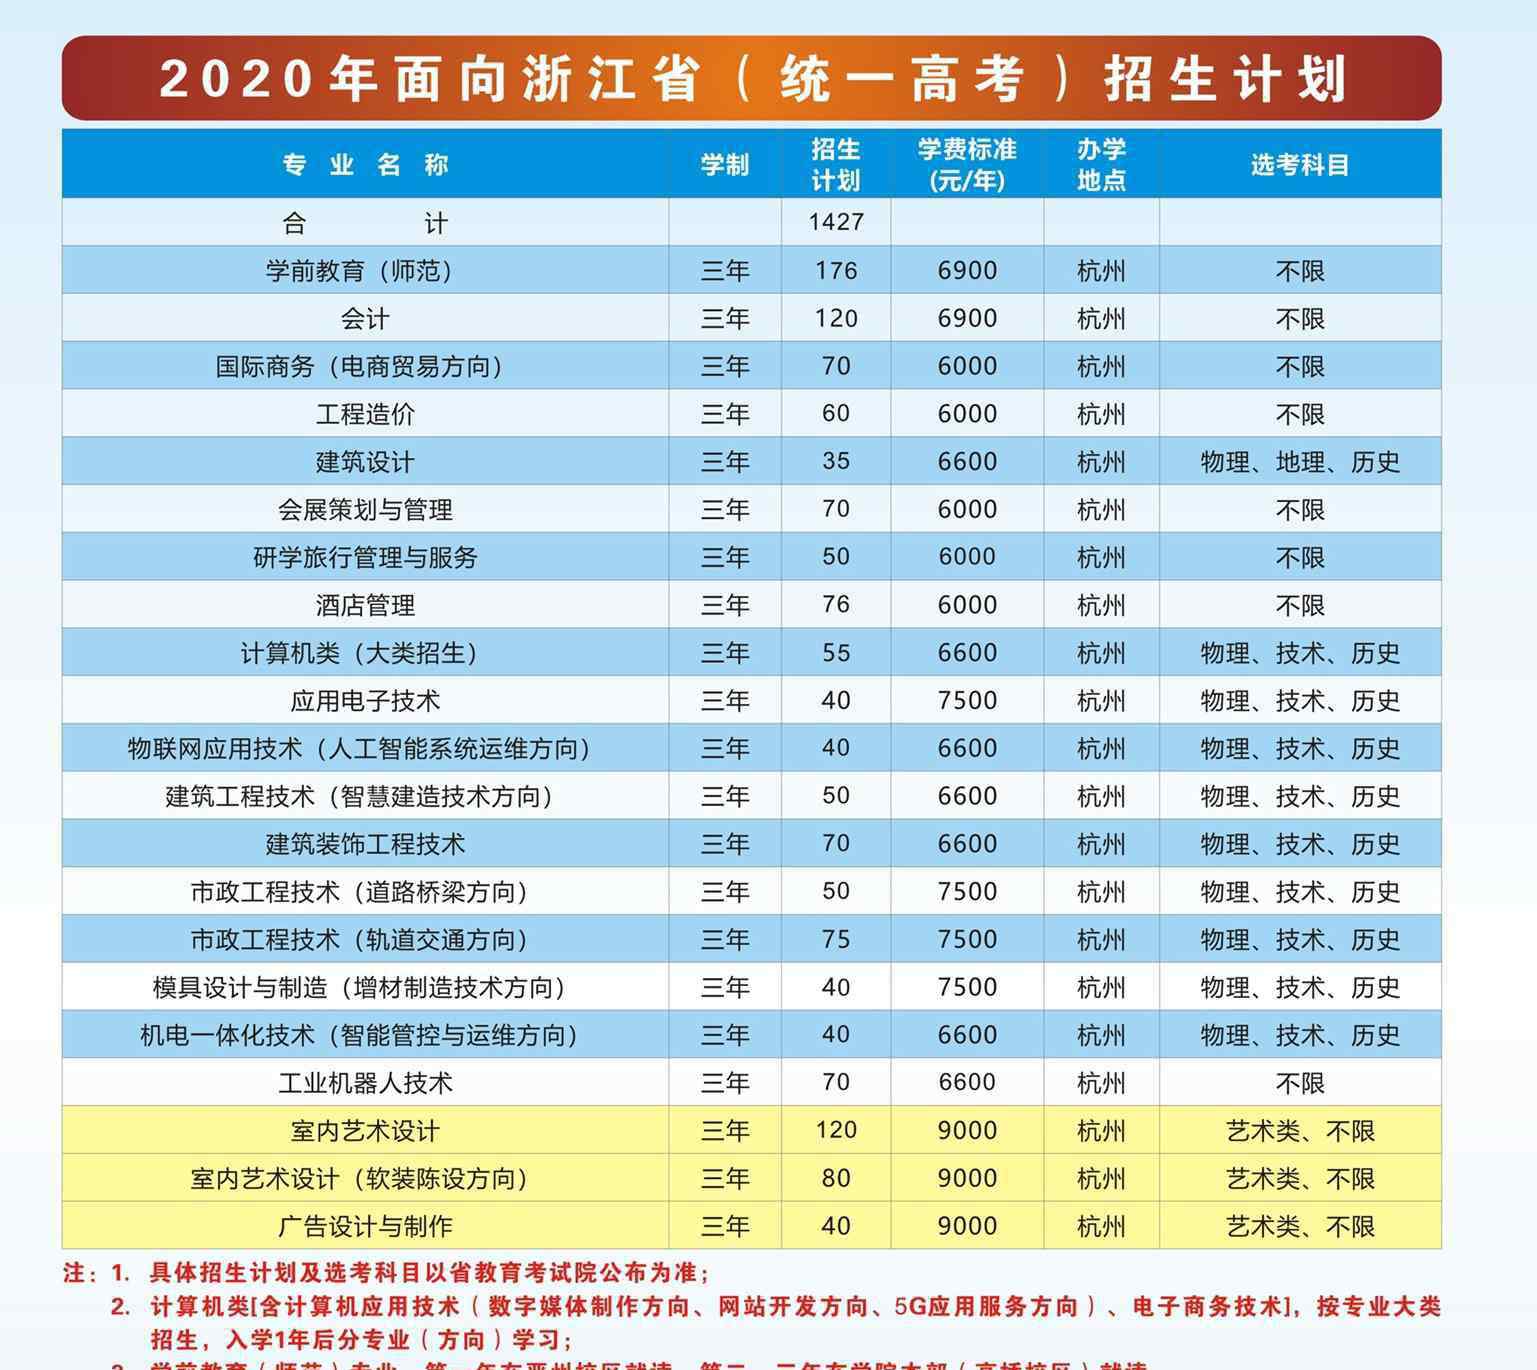 杭州科技职业技术学院 2020年杭州科技职业技术学院学费